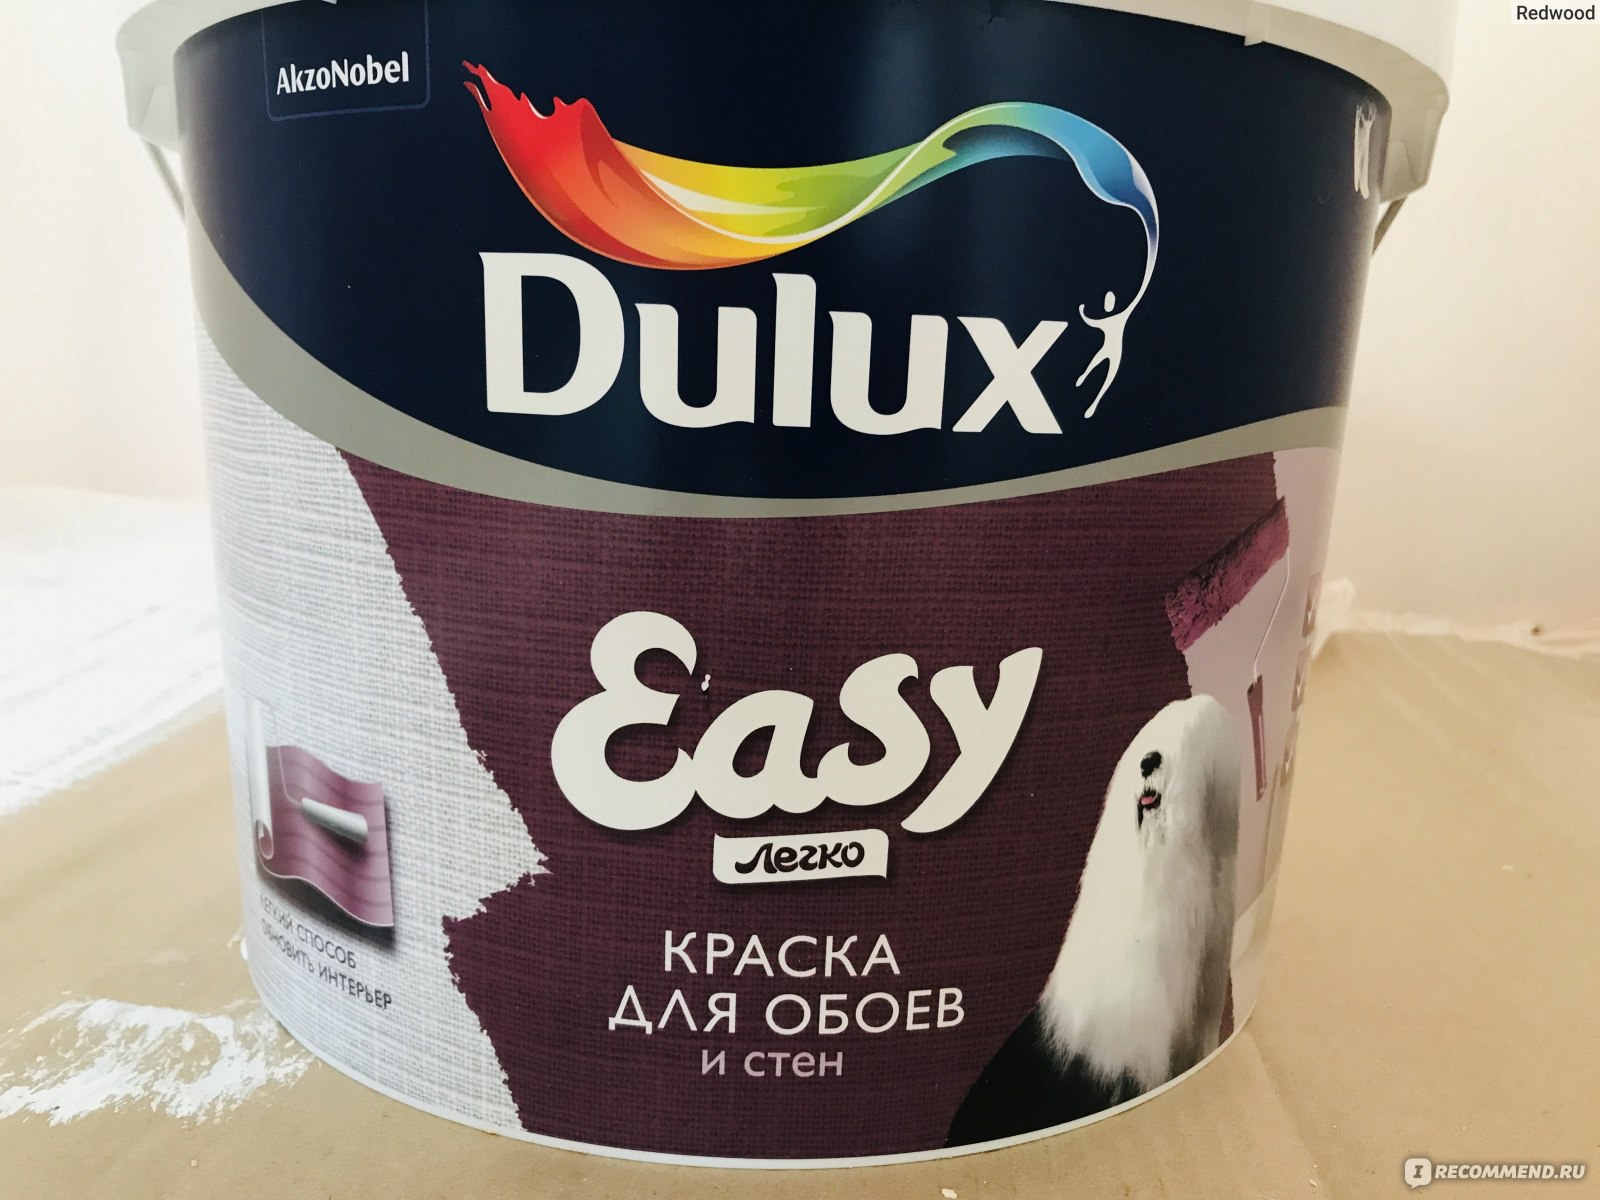 Краска Dulux Easy отзывы